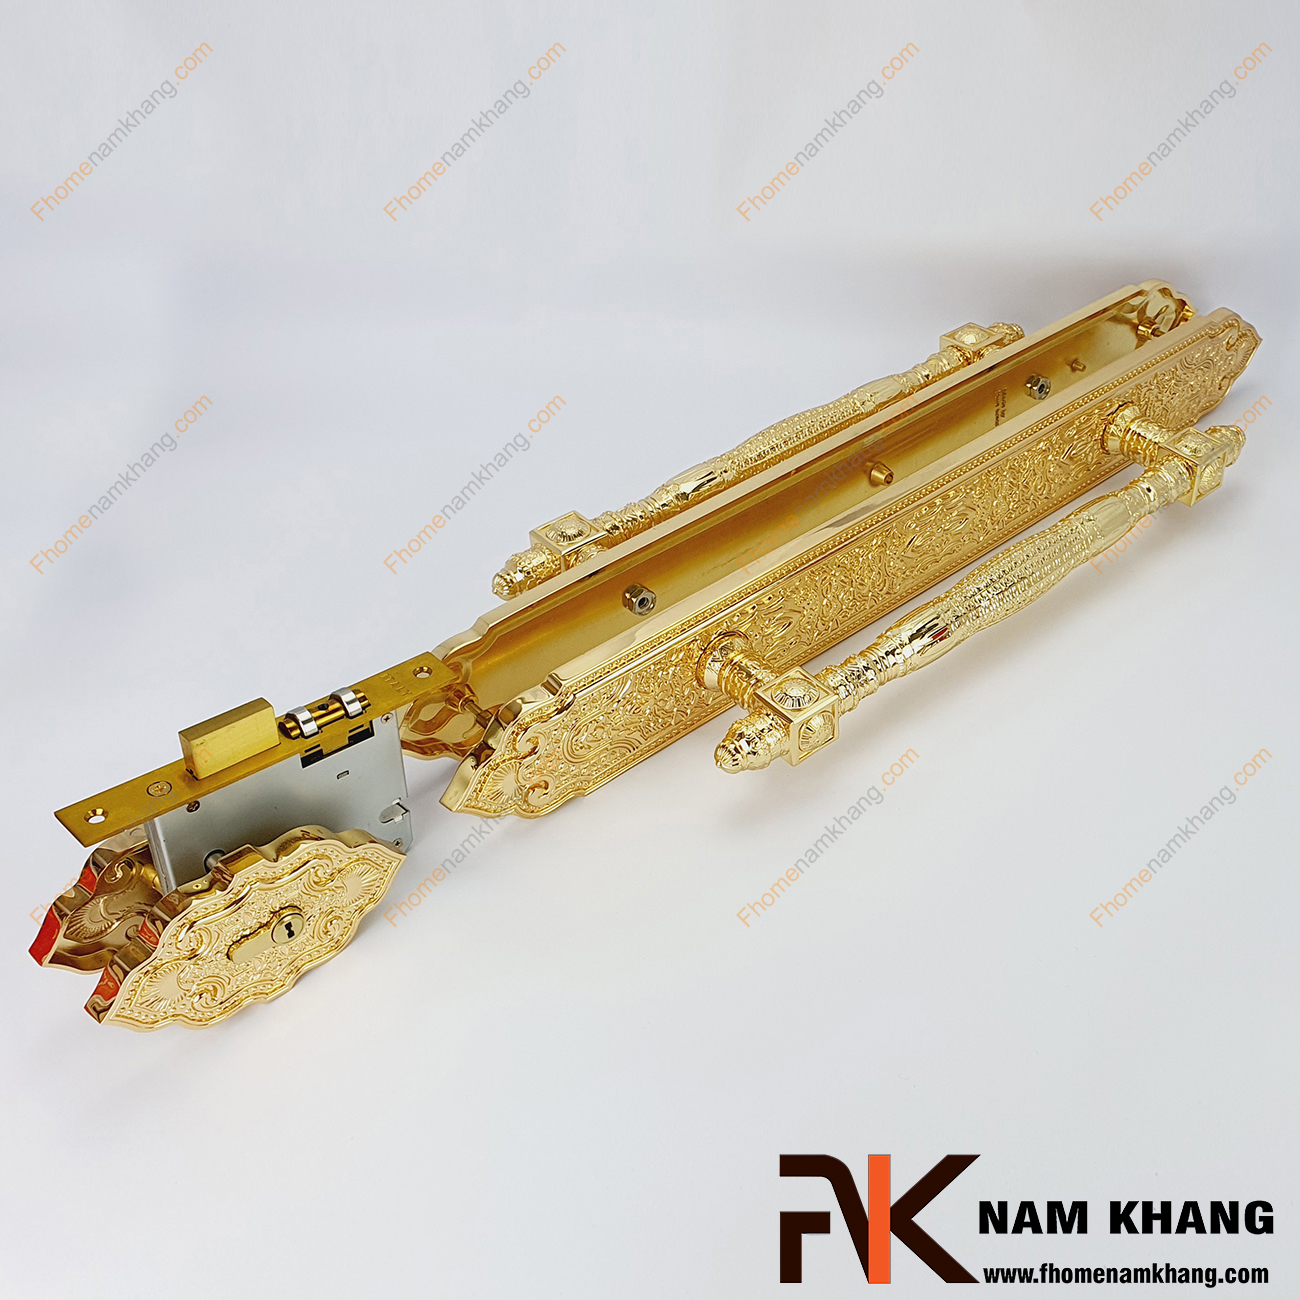 Khóa cửa sảnh phối hợp màu đồng vàng NK477XL-24K là dạng khóa cửa phối hợp đặc trưng khi kết hợp dòng khóa thân rời và tay nắm cửa sảnh lớn.